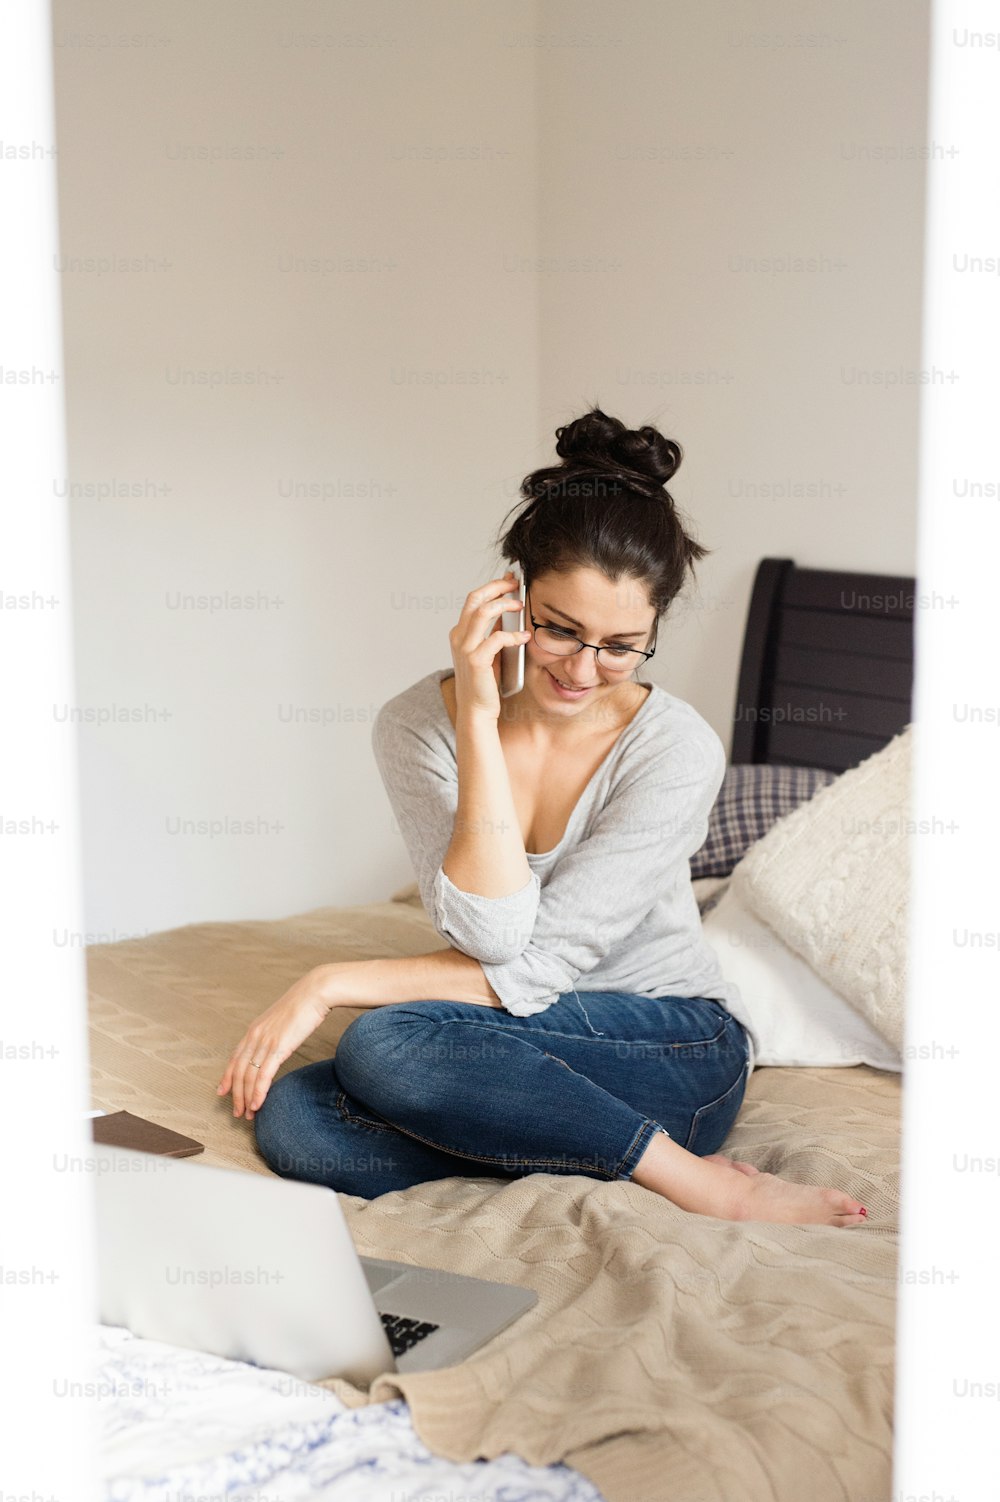 Bella giovane donna che indossa occhiali da vista seduta sul letto, taccuino accanto a lei, tenendo in mano lo smartphone, facendo una telefonata, ufficio a casa.